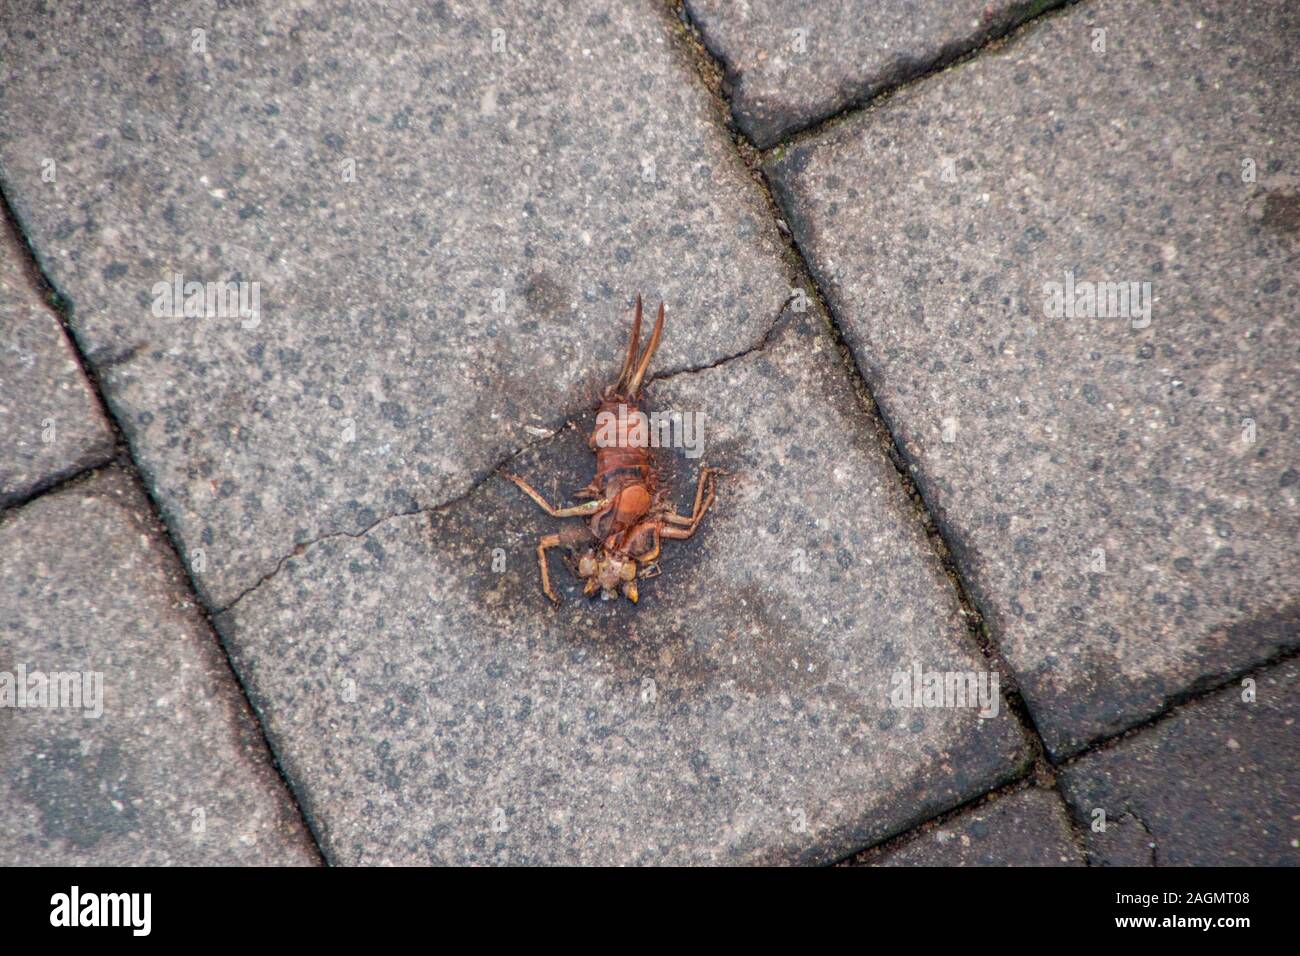 Una schiacciata scorpion sulla strada. Foto Stock